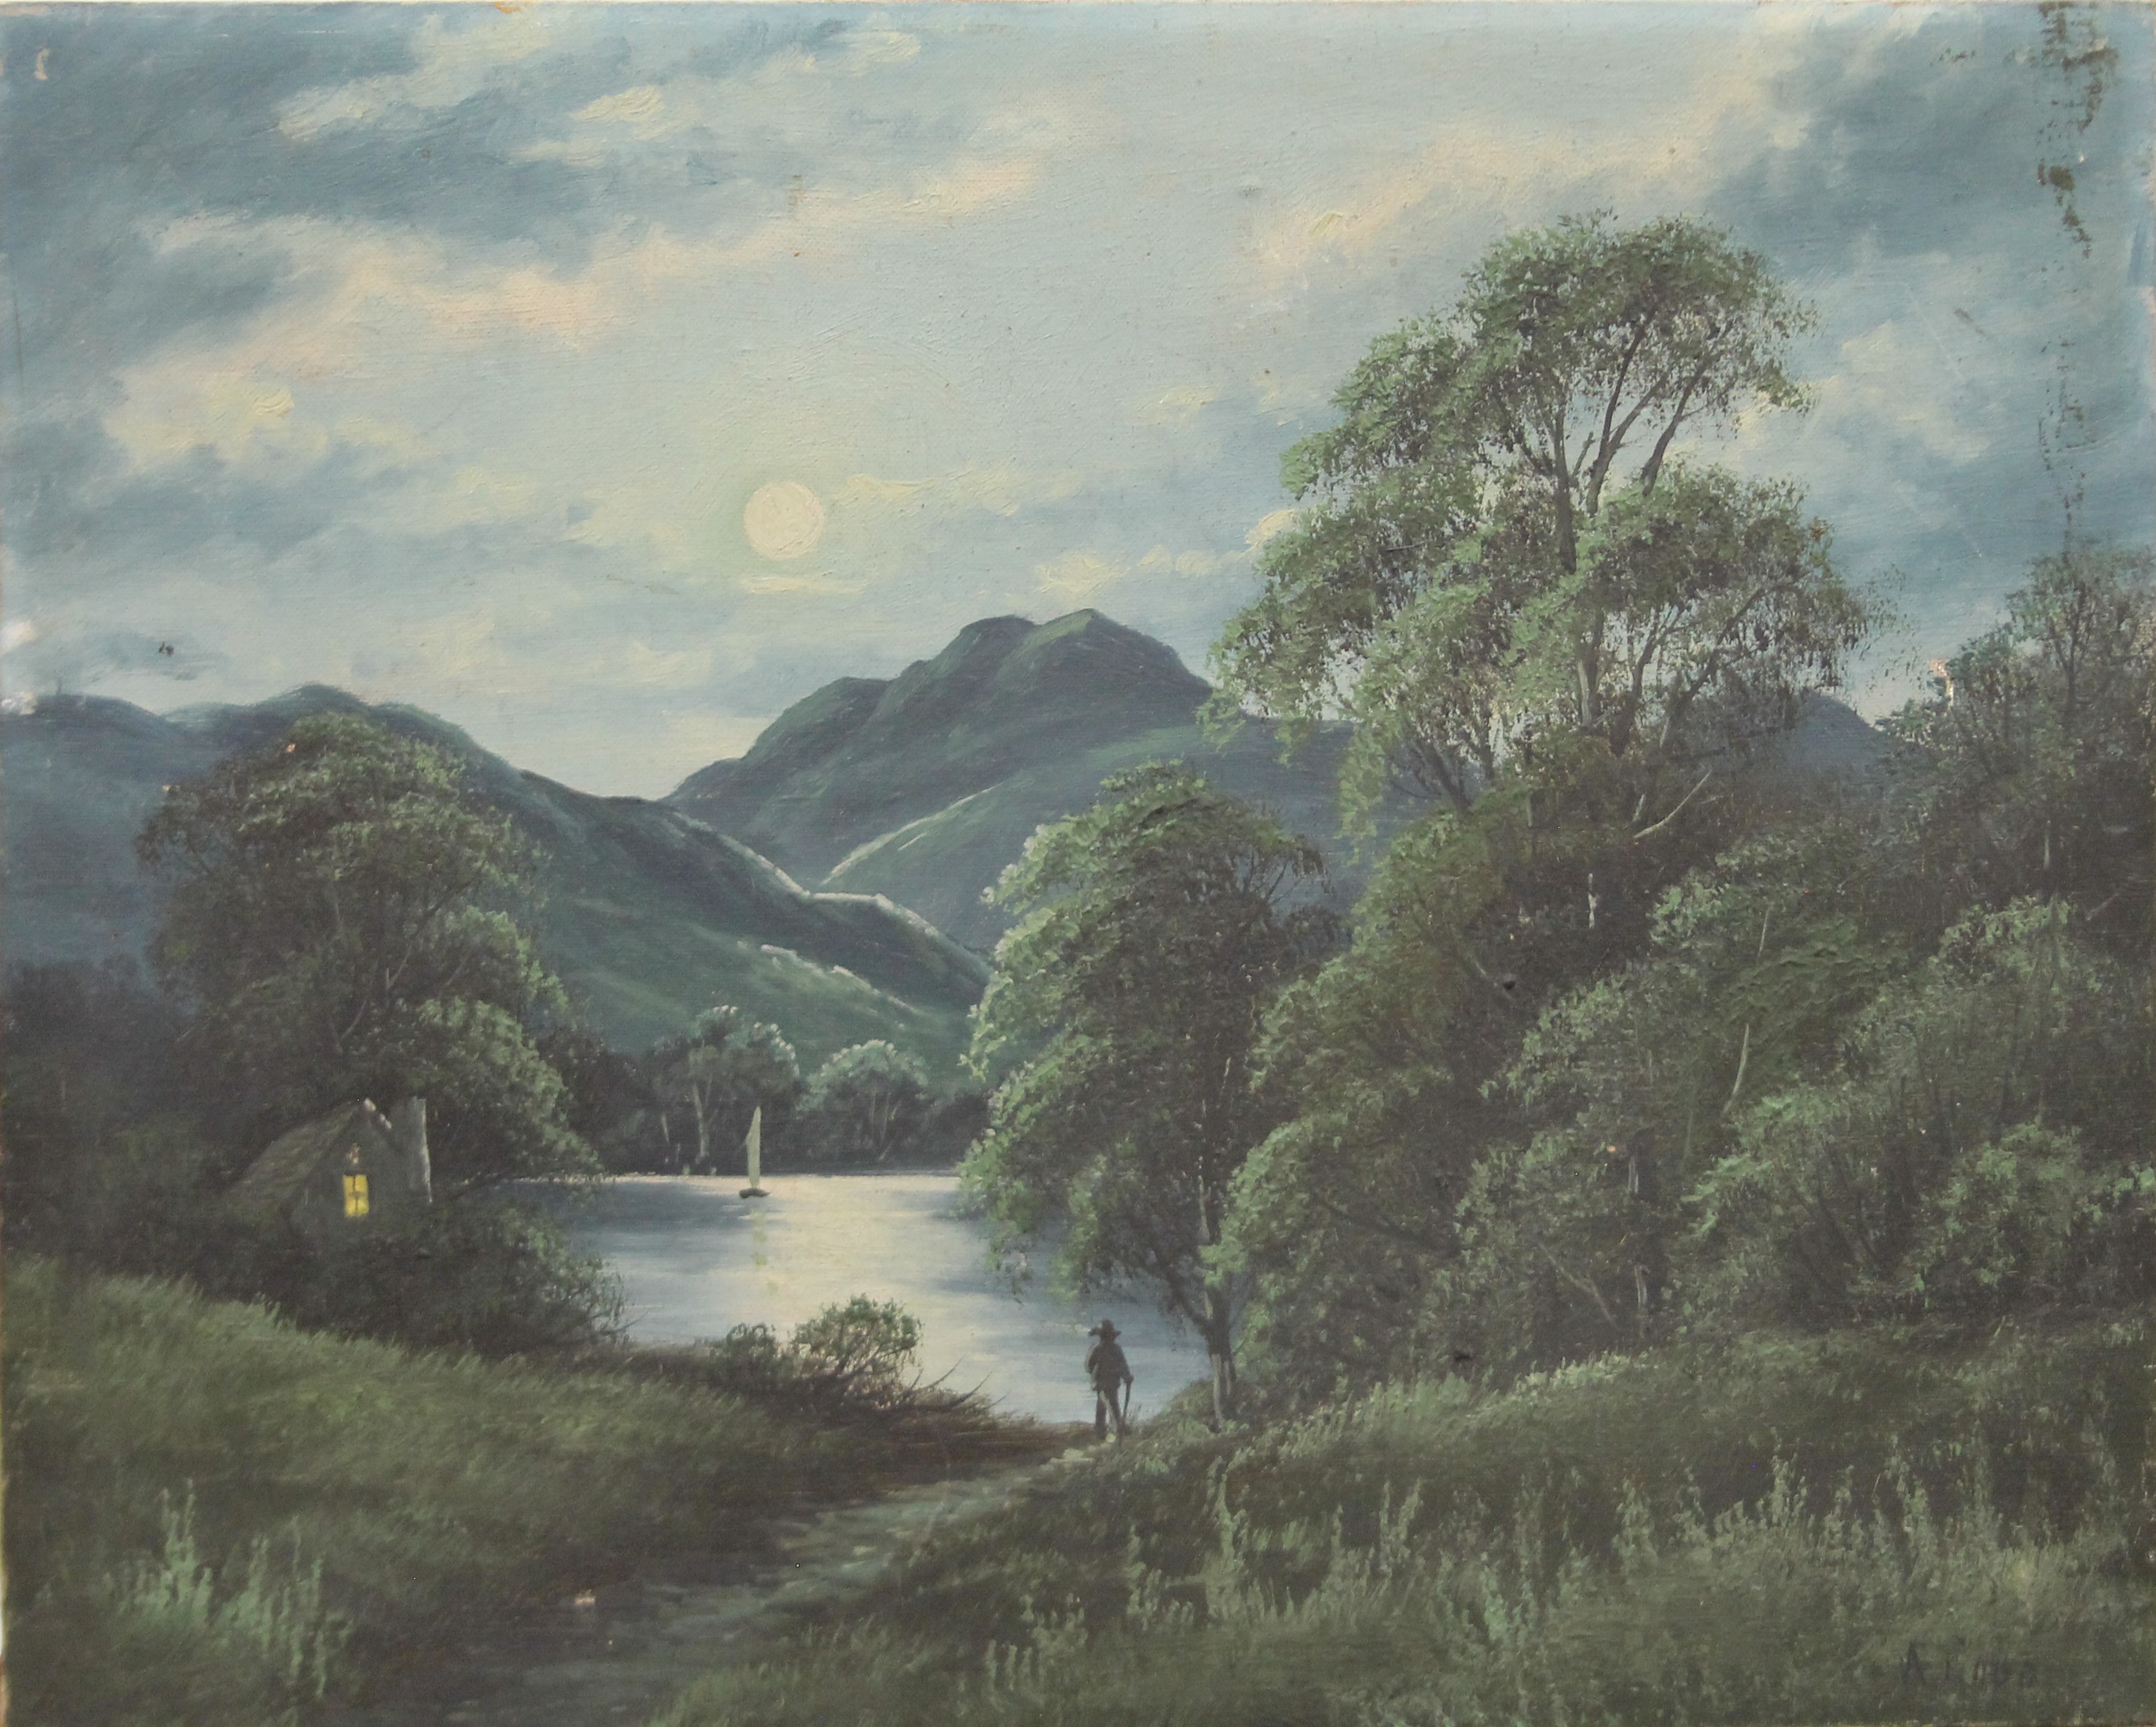 Loch Earn by Moonlight, oil on canvas, unframed. 50.5 x 40.5 cm.